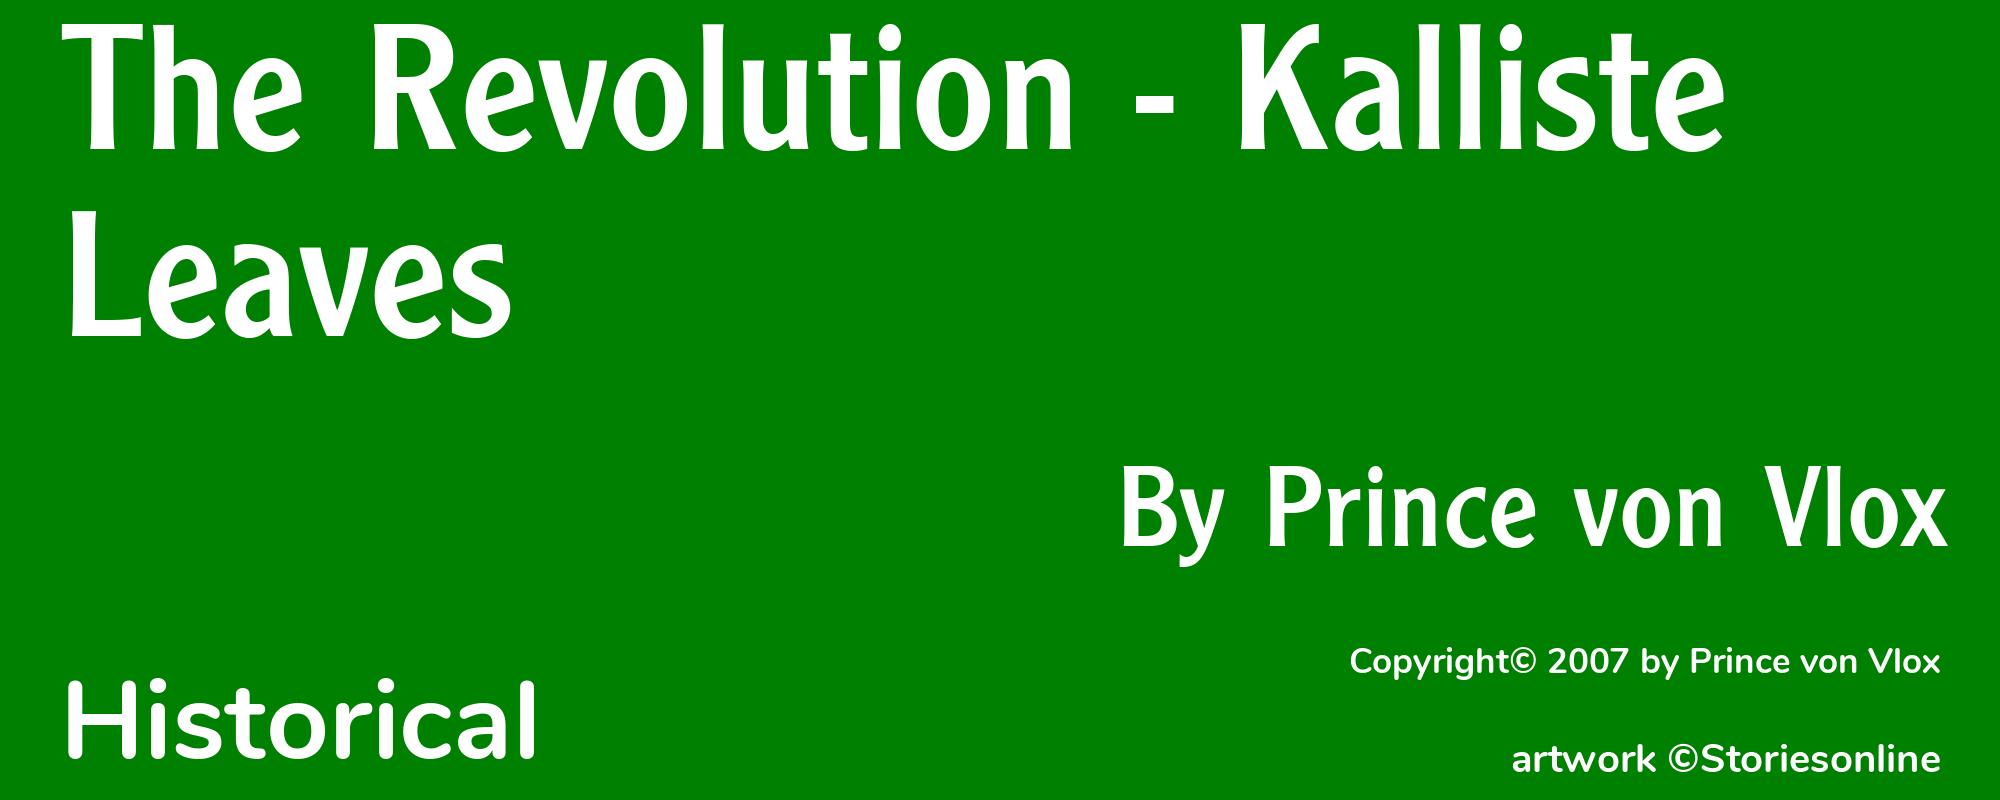 The Revolution - Kalliste Leaves - Cover